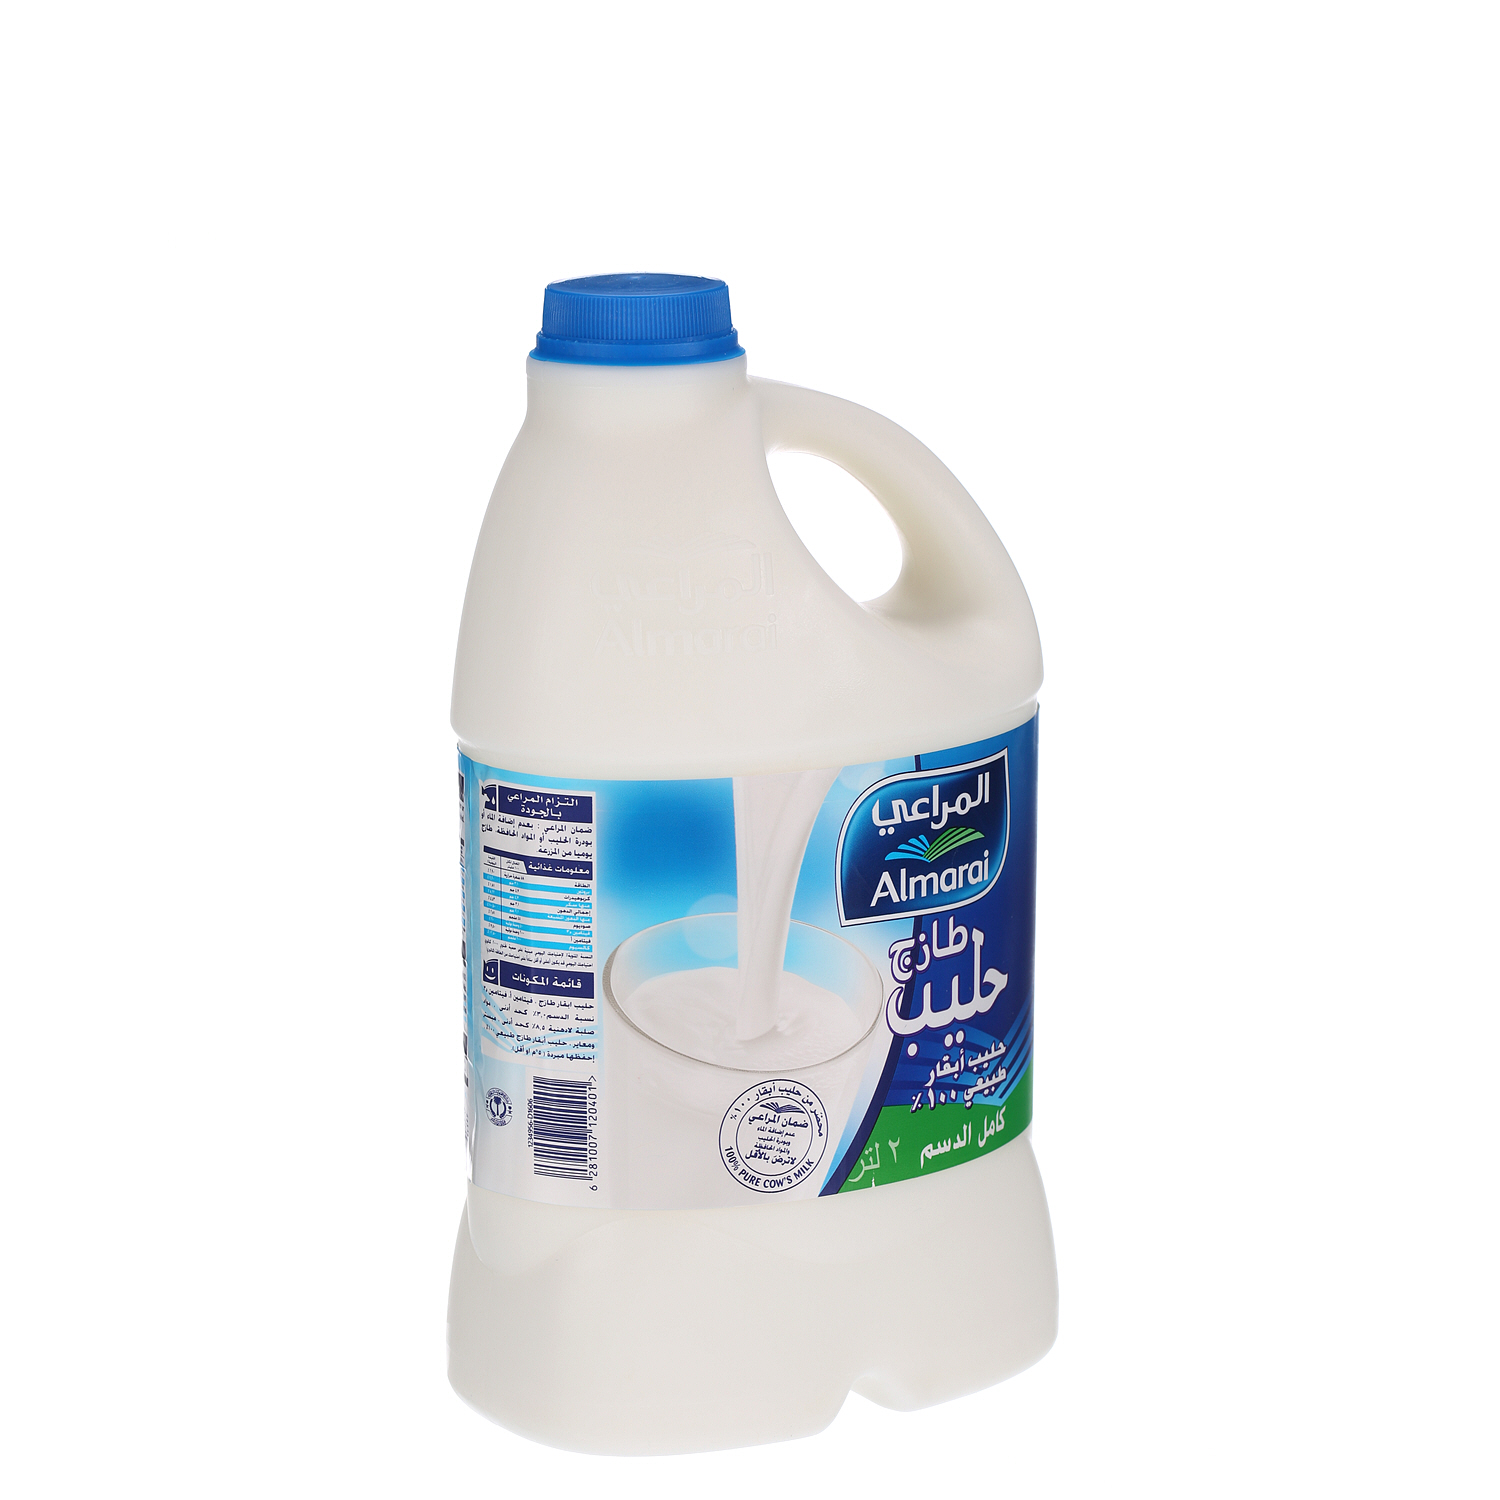 Al Marai Fresh Milk Full Fat 2 L